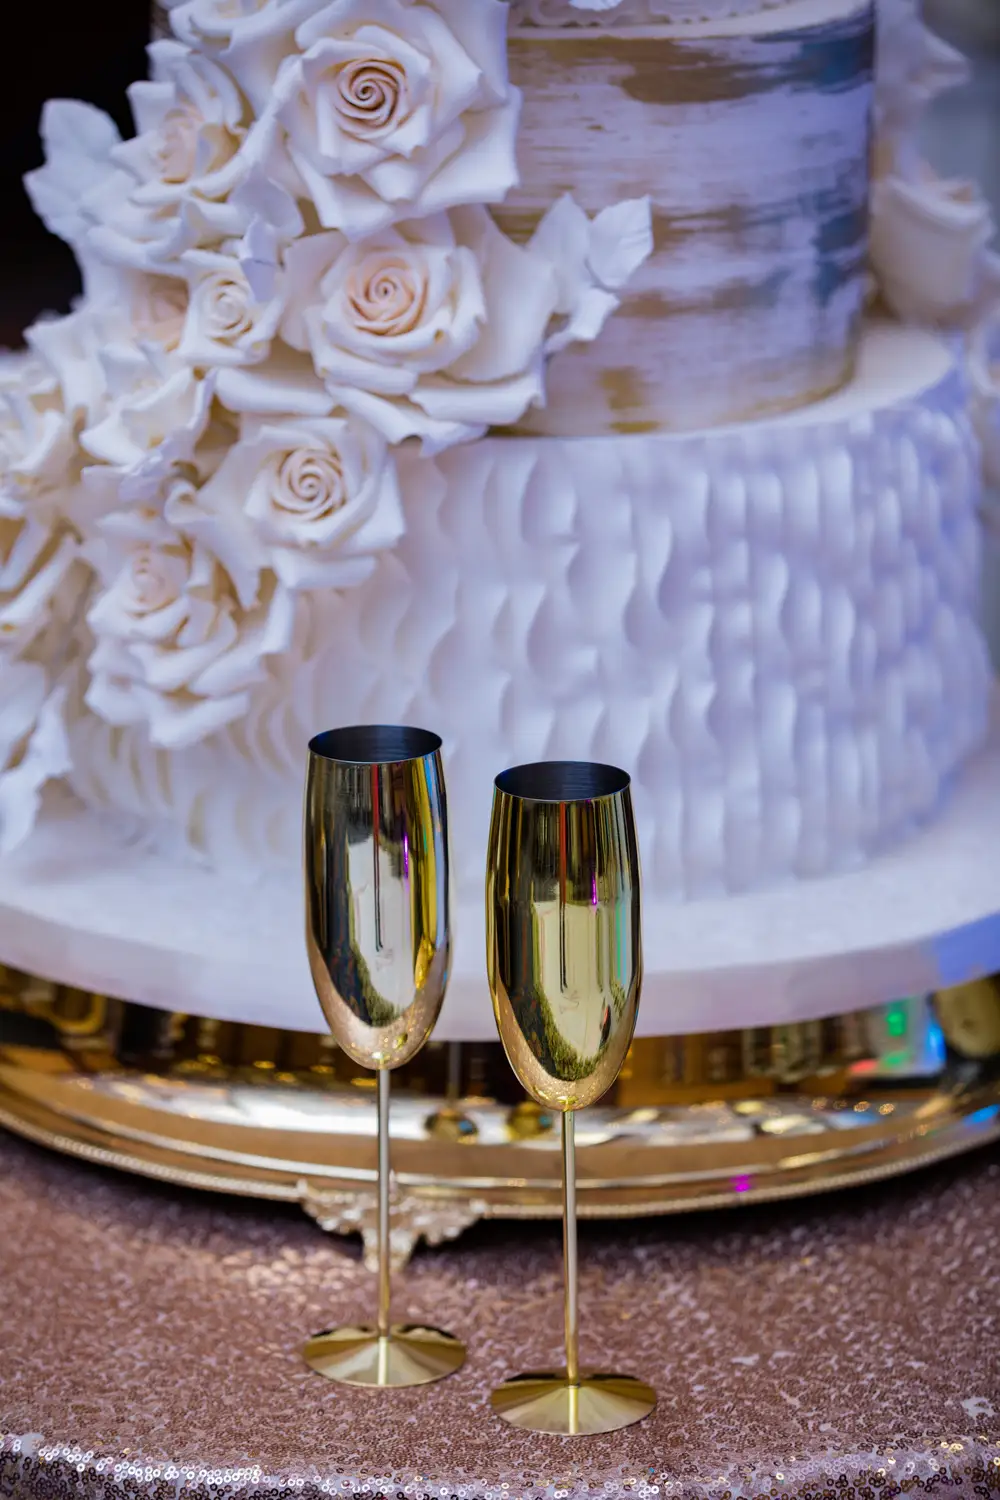 Wine glass with wedding cake